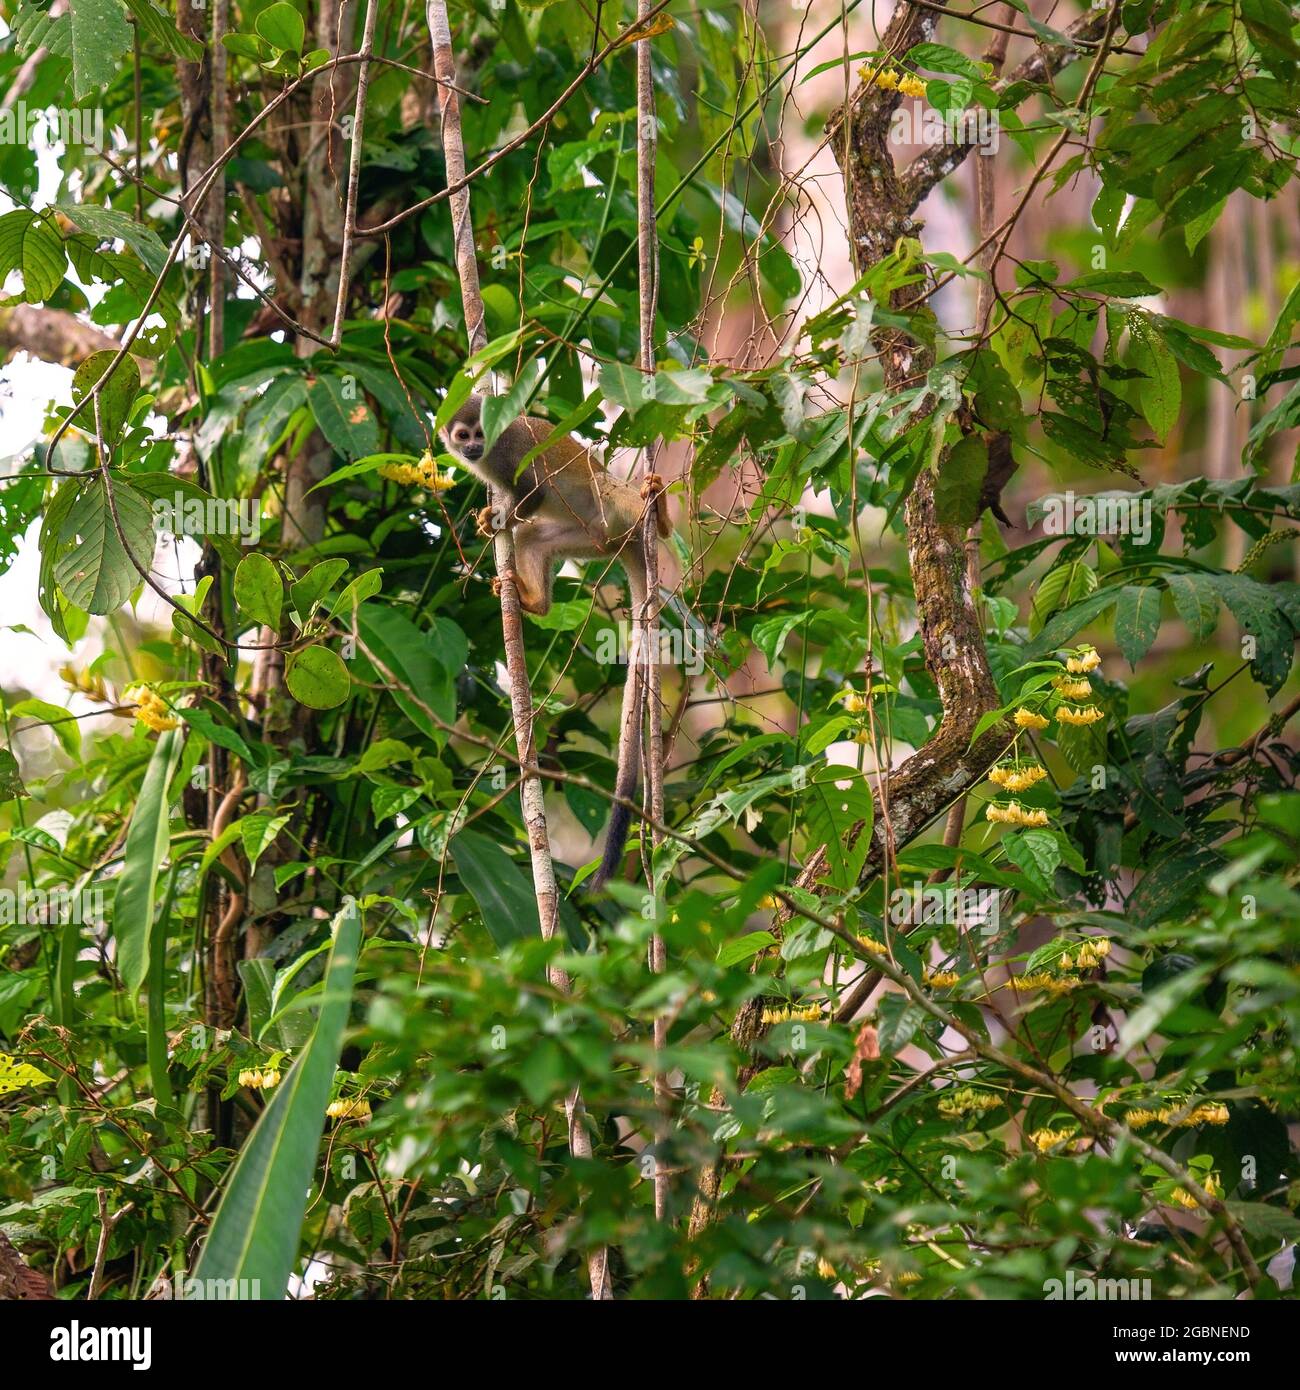 Singe écureuil (Saimiri) dans son environnement naturel de la forêt amazonienne, parc national Yasuni, Équateur. Banque D'Images